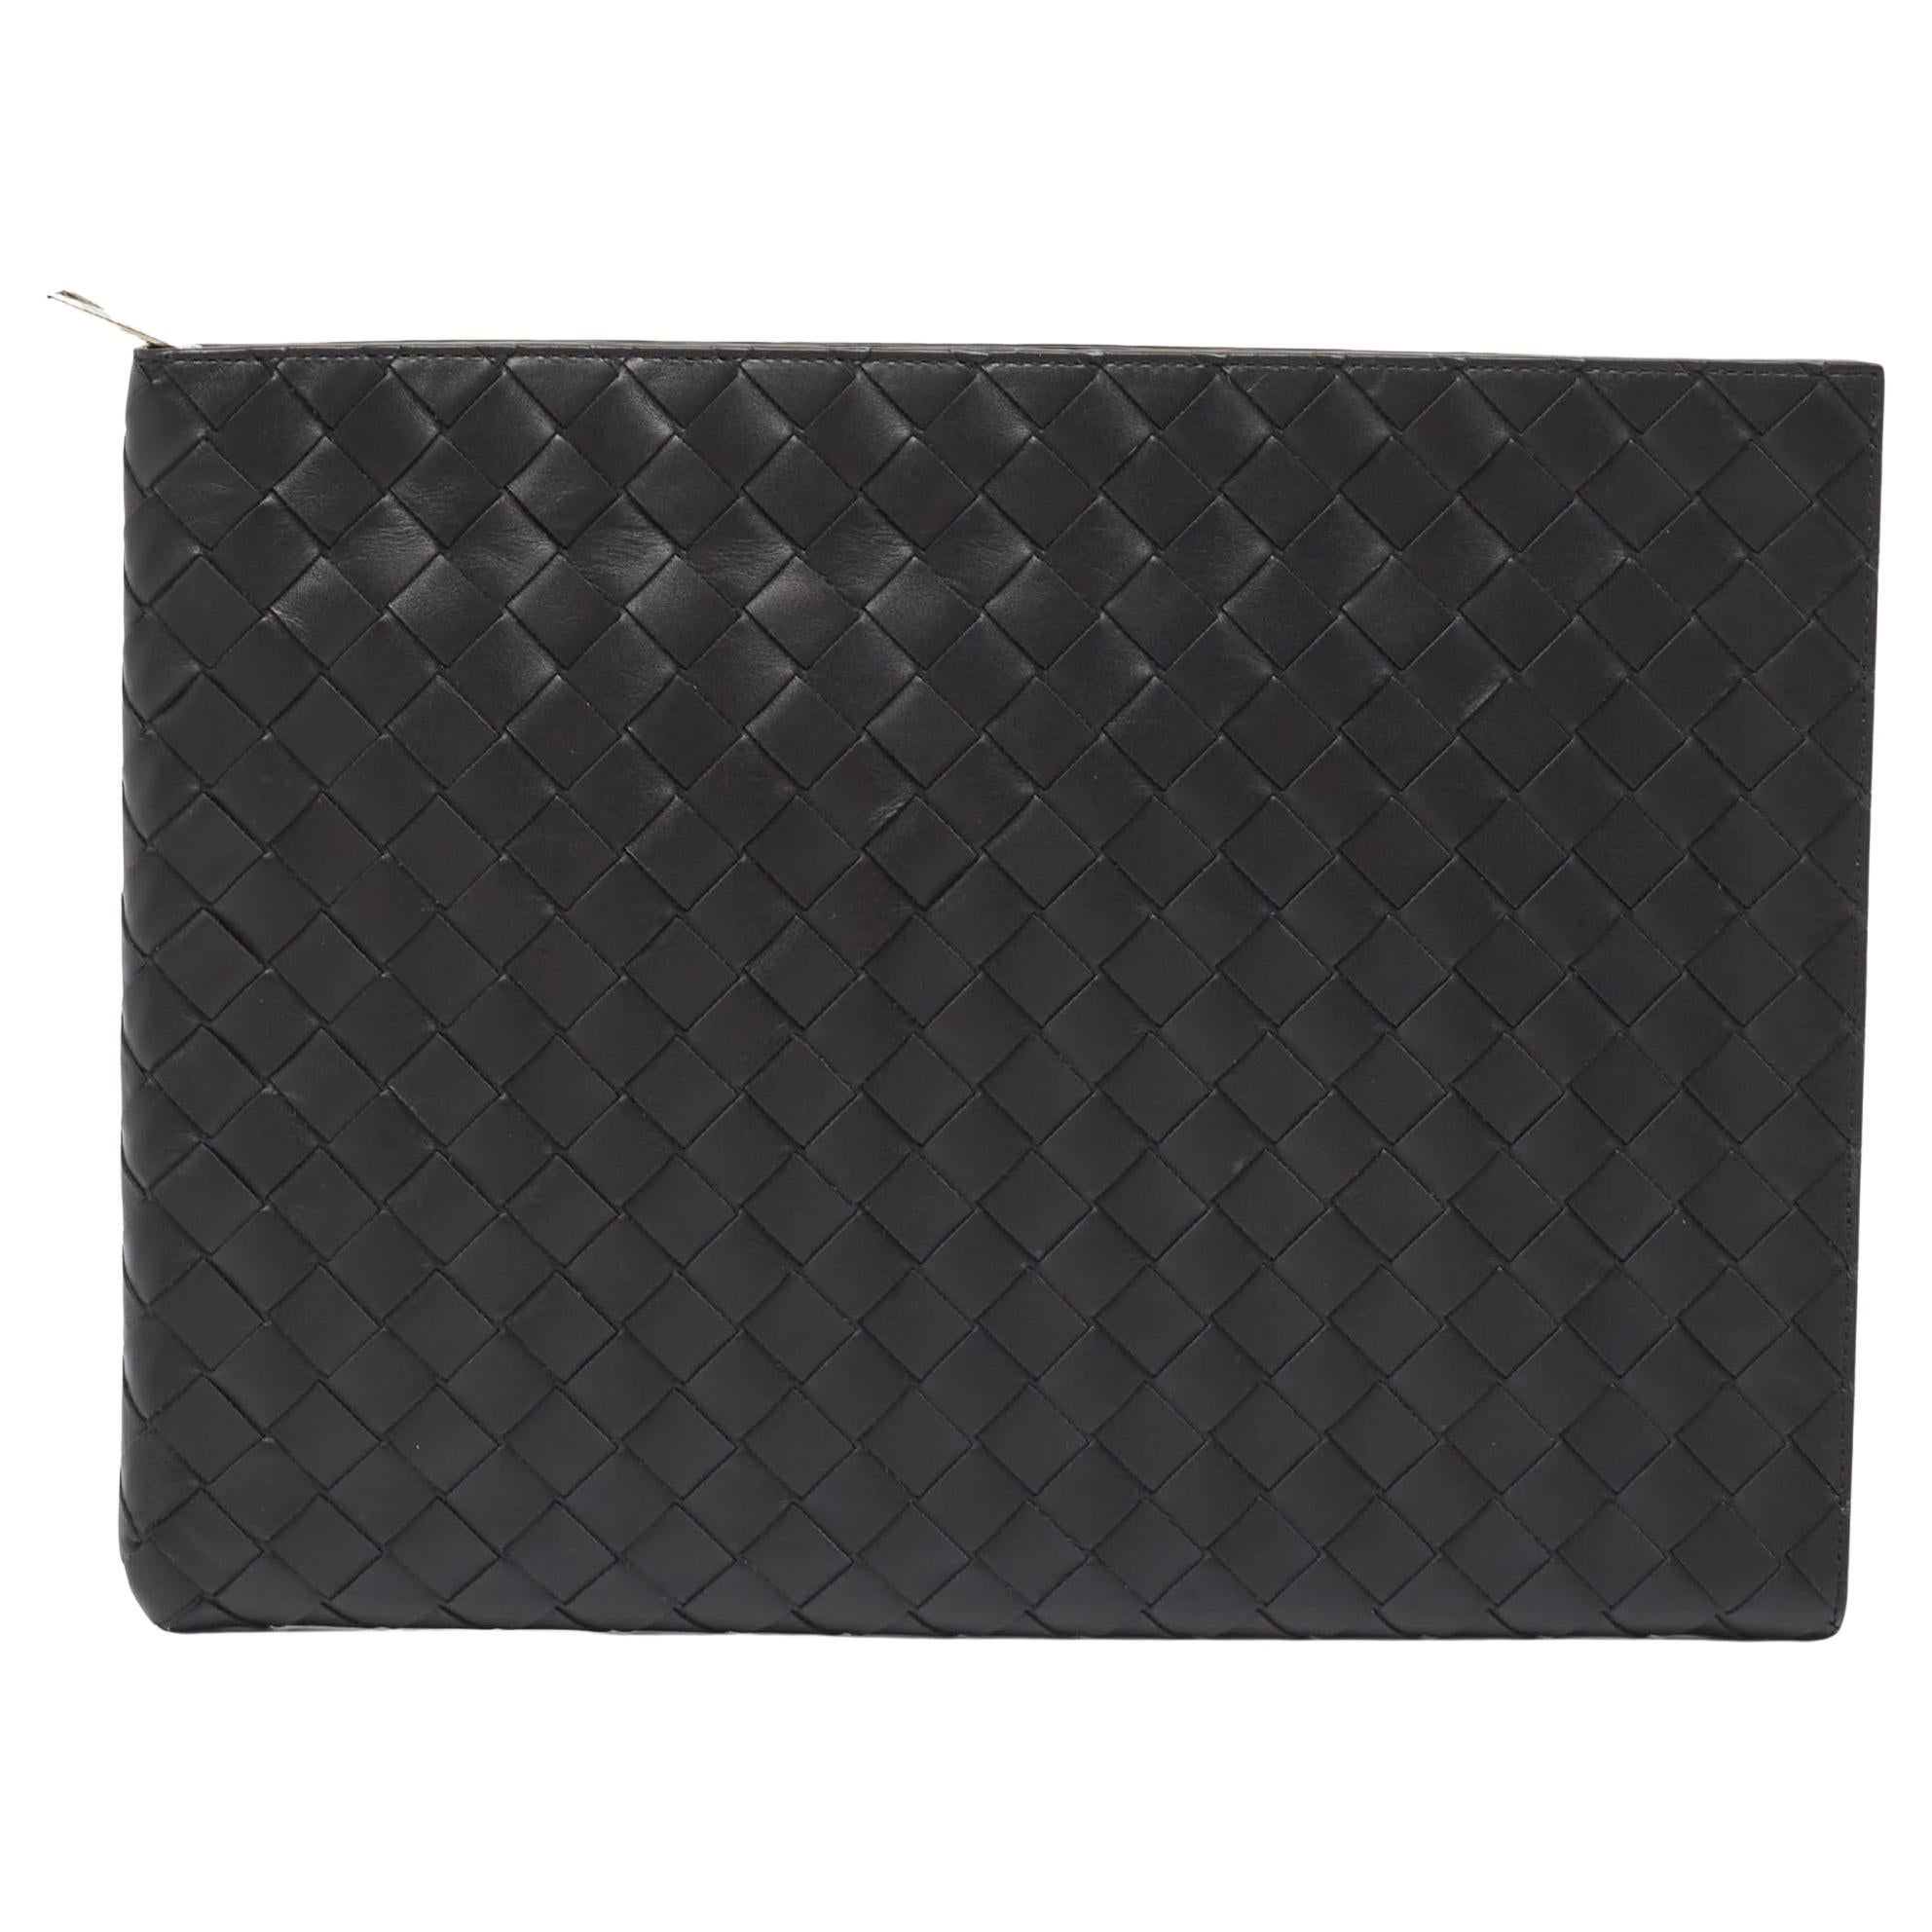 Bottega Veneta Black Intrecciato Leather Half Zip Pouch For Sale